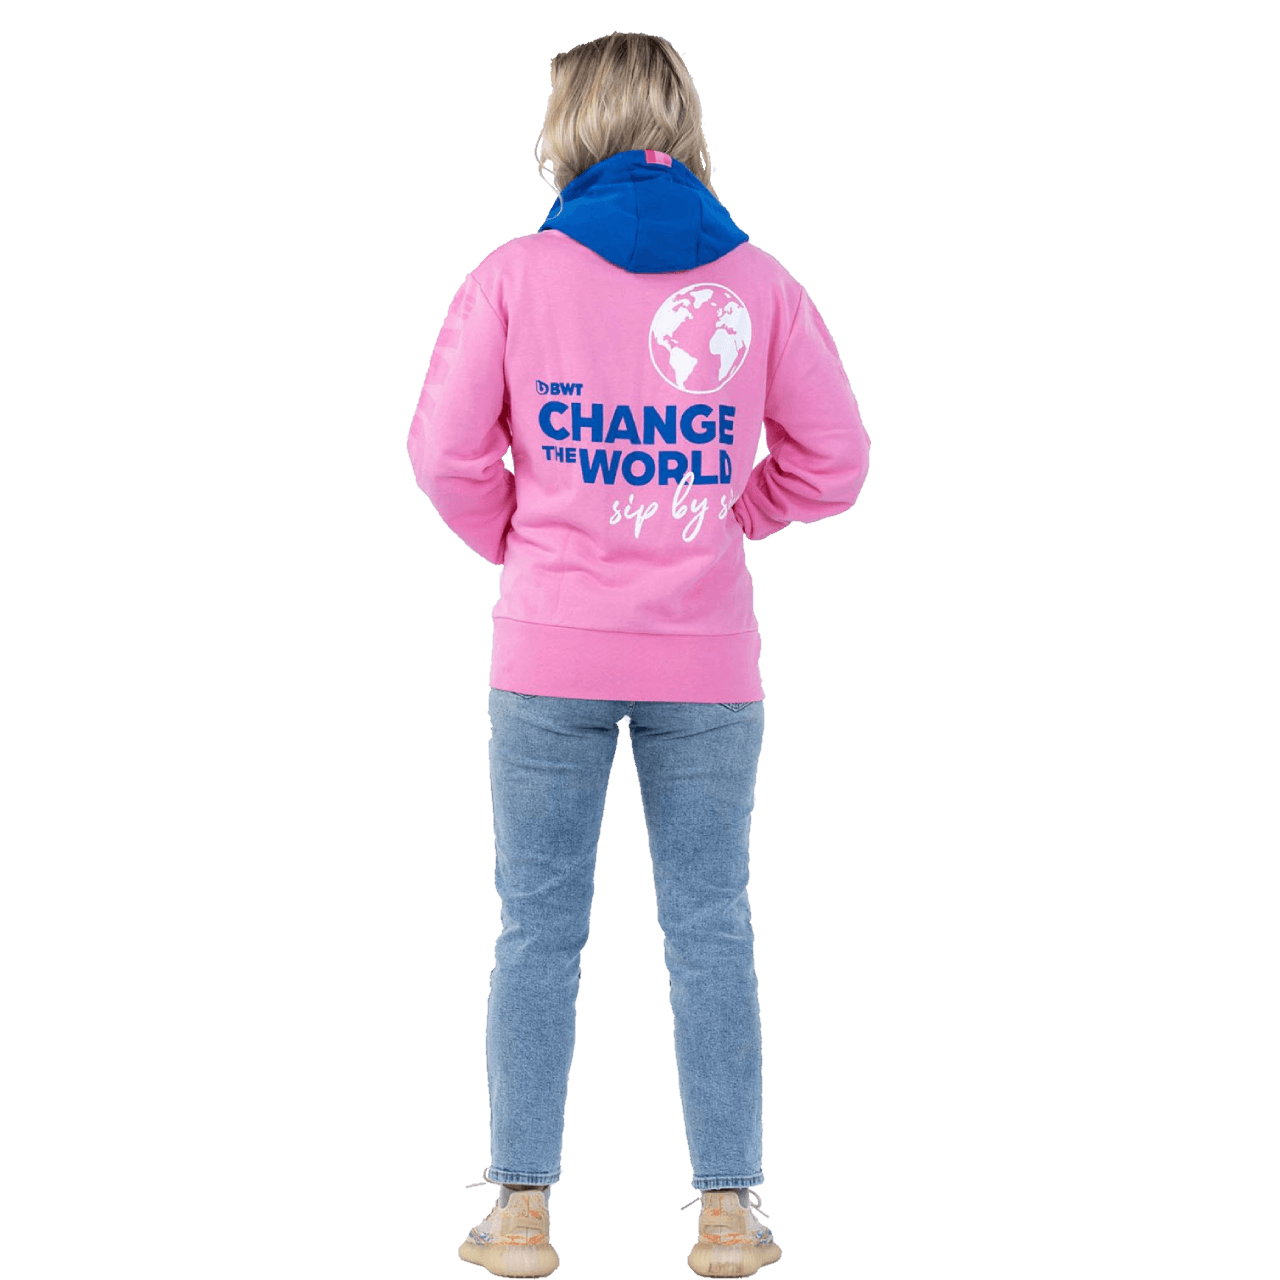 Dame trägt BWT Change the World Kapuzenpullover in pink mit blauer Aufschrift